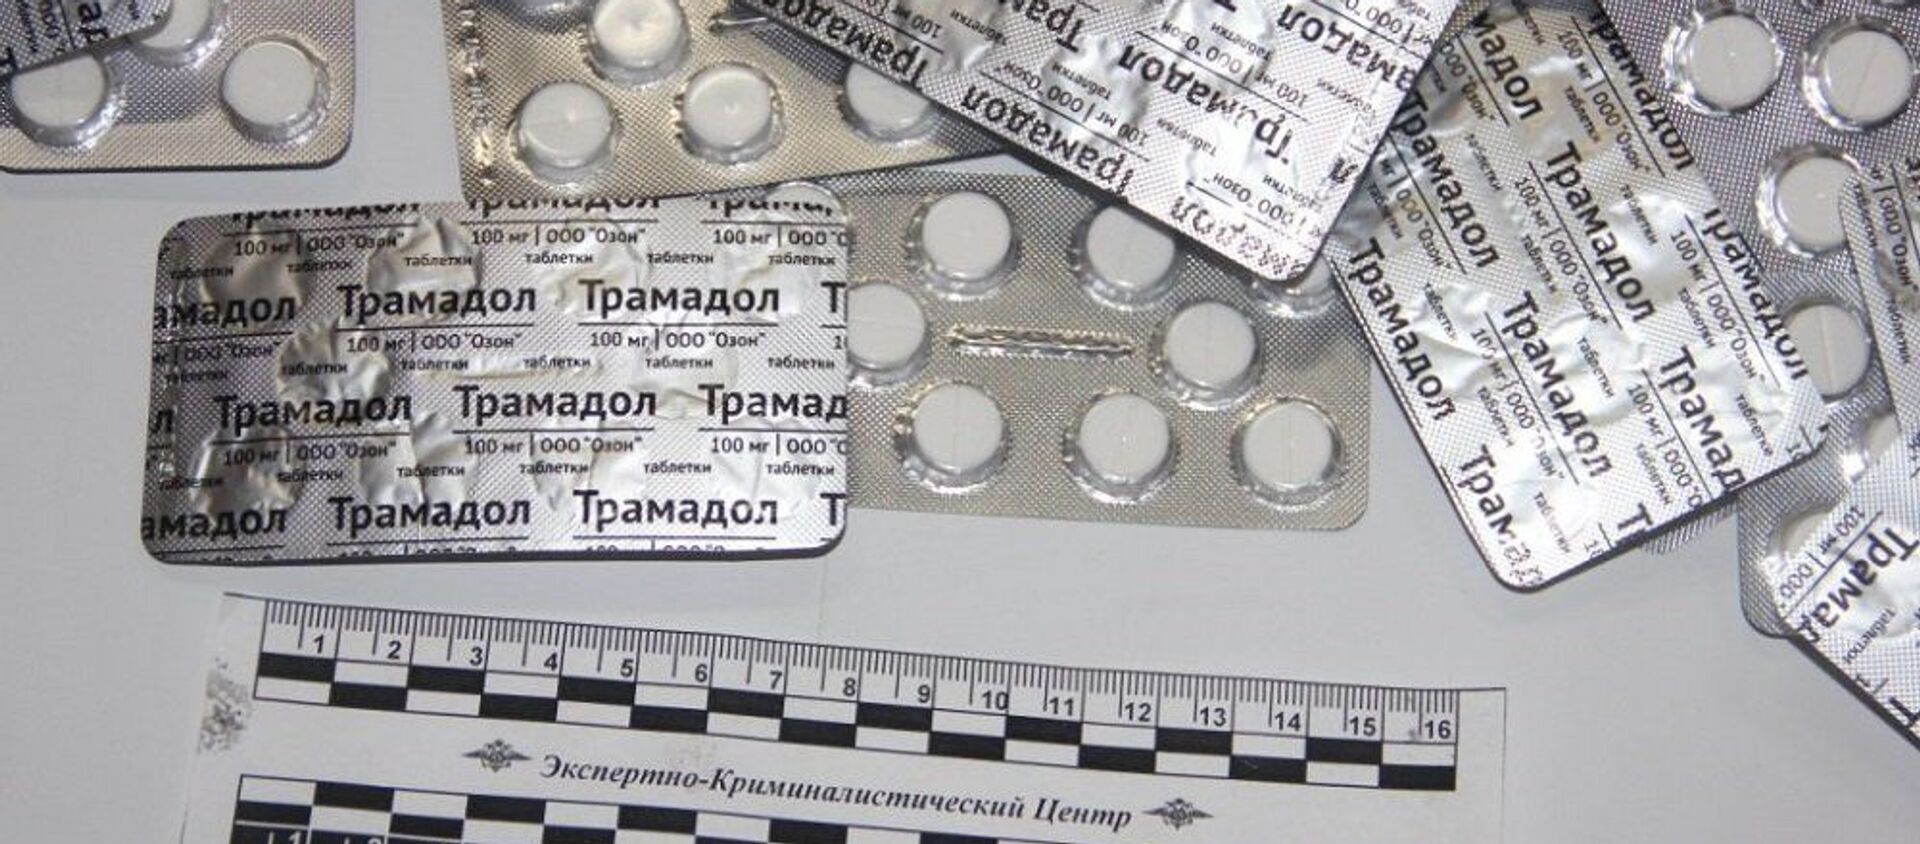 Сотрудники СГБ задержали 18 торговцев аптечными наркотиками - Sputnik Узбекистан, 1920, 31.07.2020